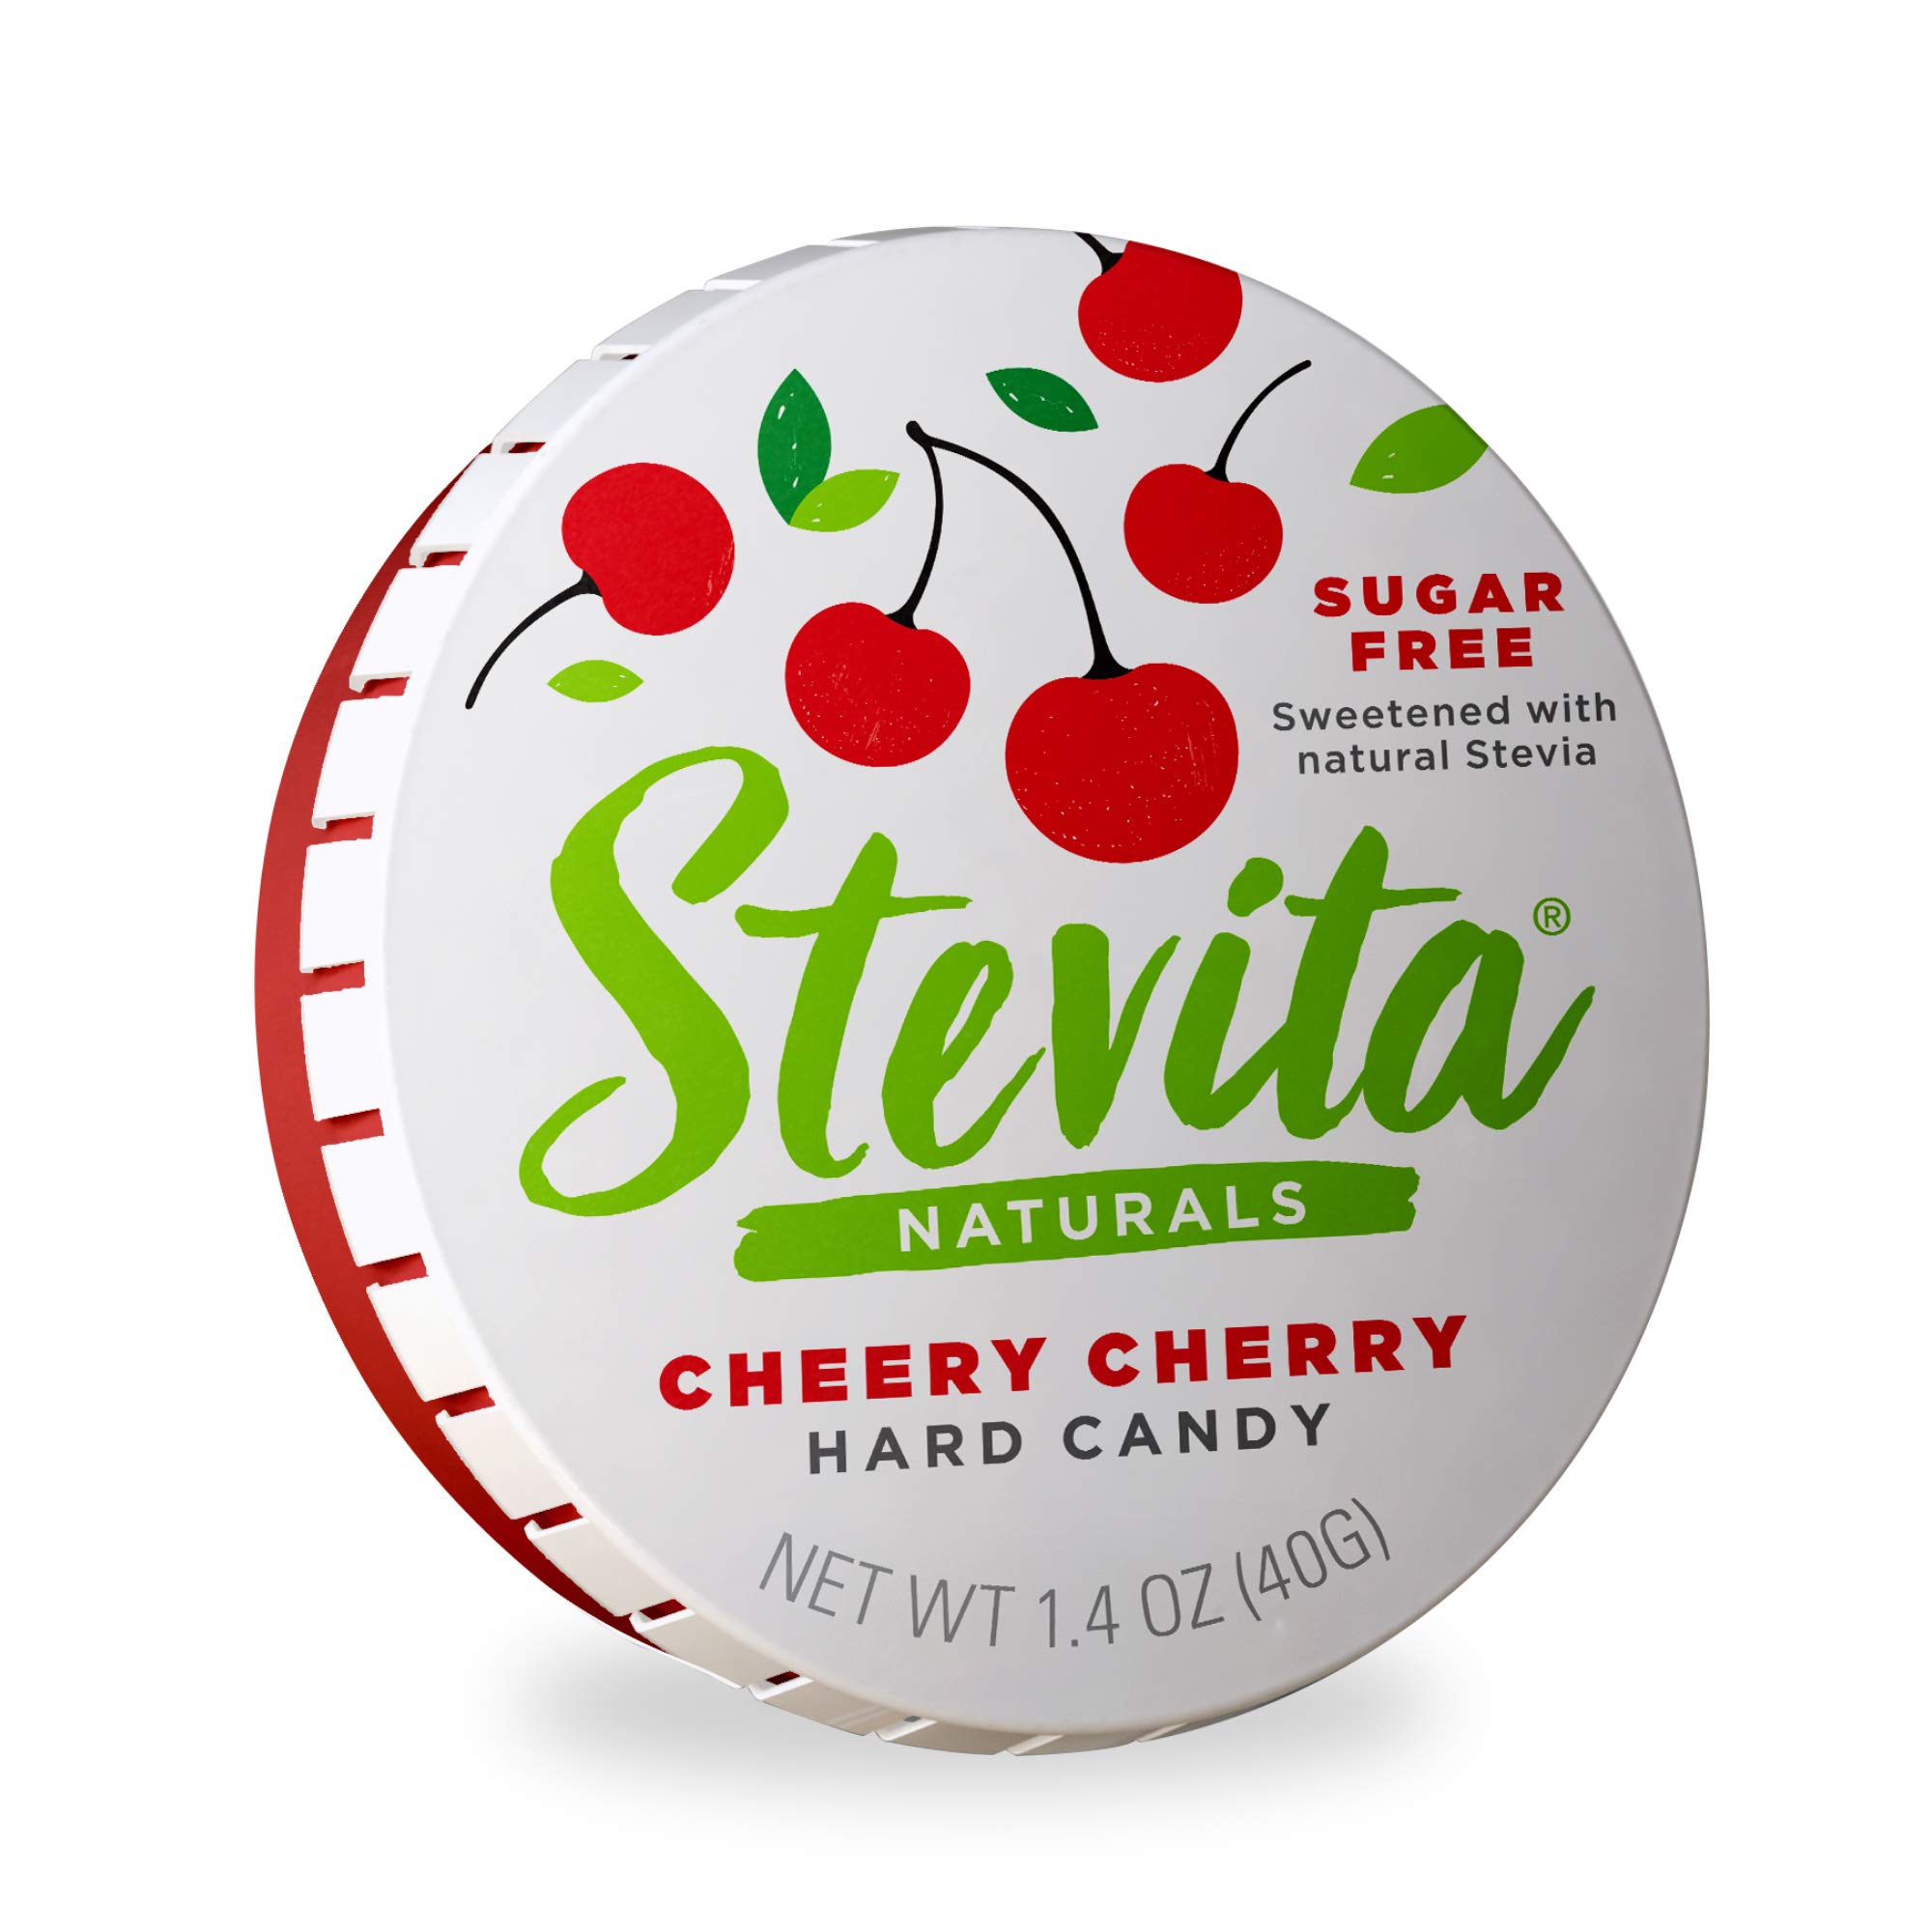 Stevita Cheery Cherry Hard Candy